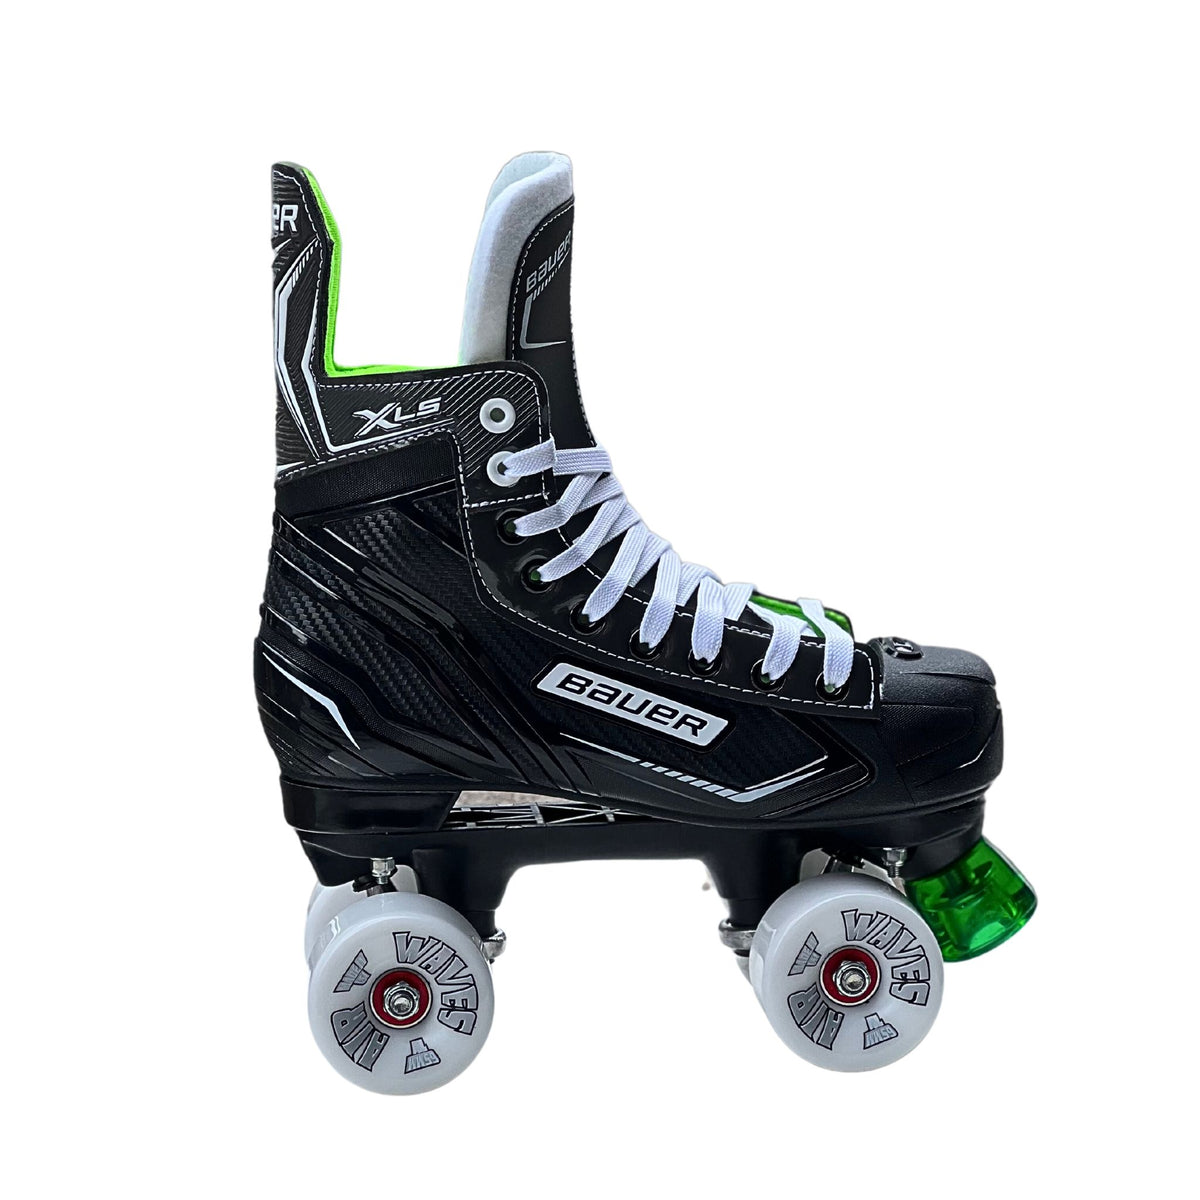 Bauer X-LS Quad Roller Skates with Airwaves Wheels -Roller Skates | JT Skate